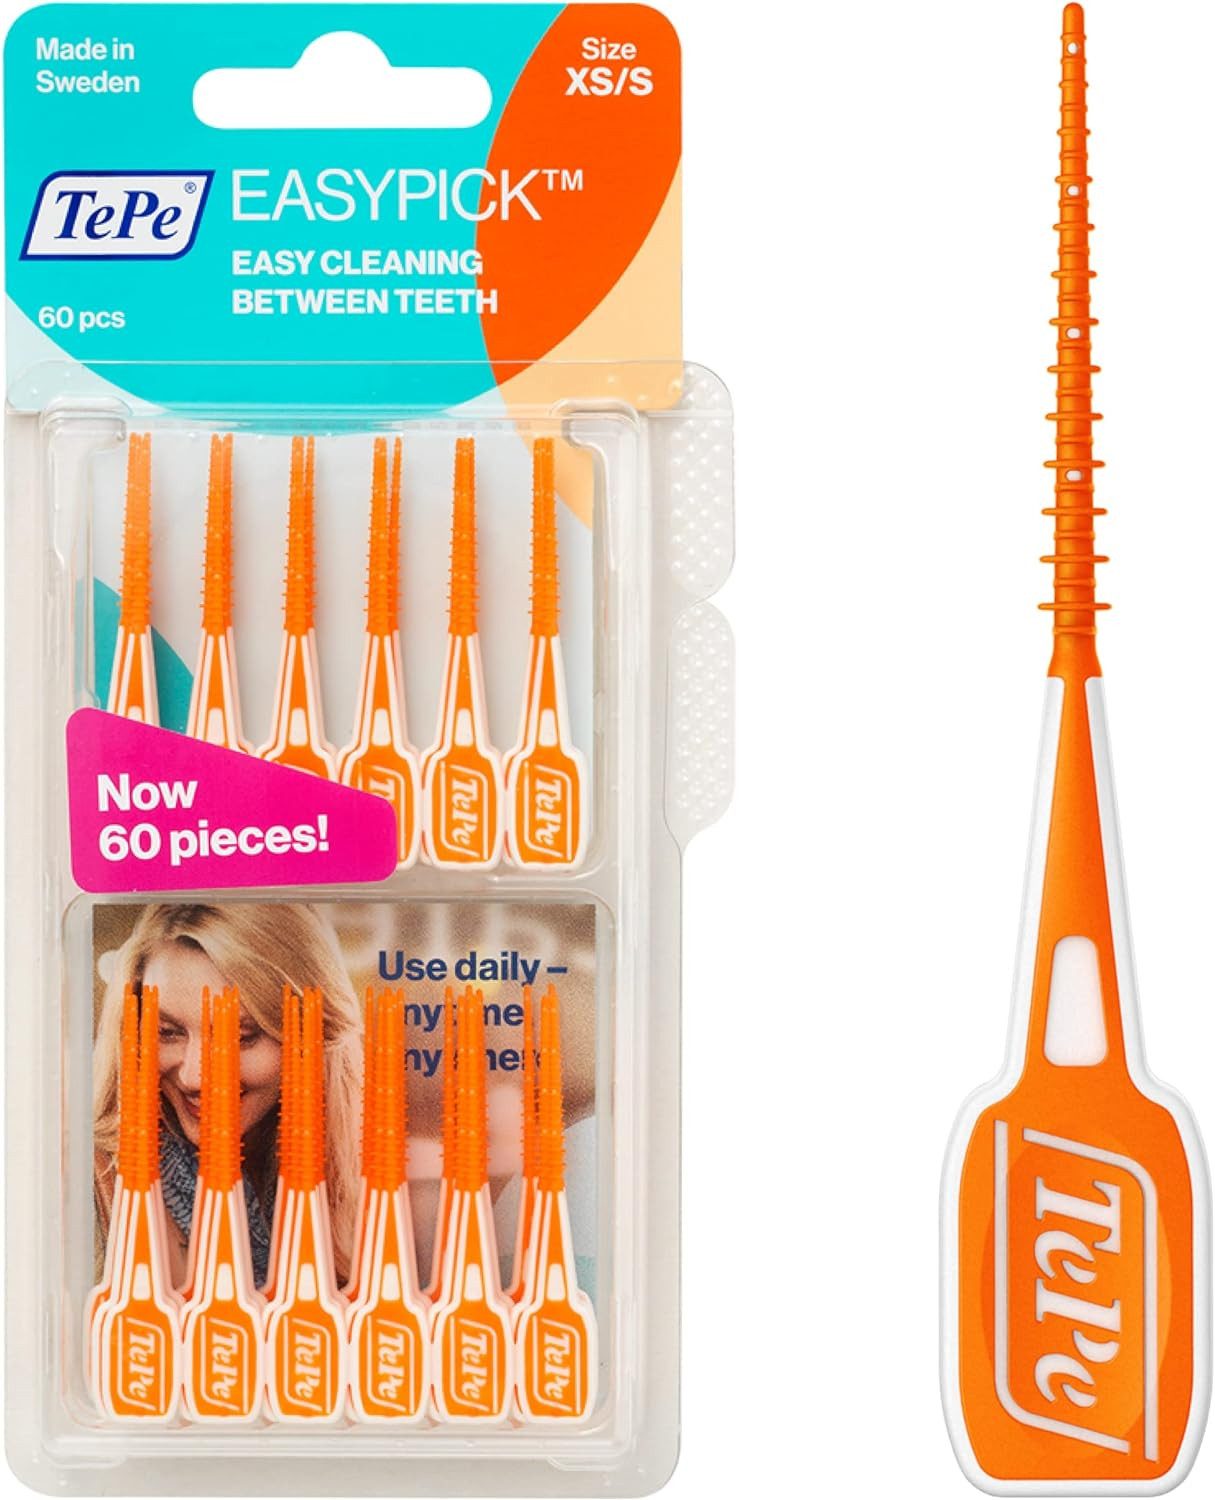 TePe Interdentalbürsten EasyPick Dental Stick, 120 Stück (Doppelpack 2x 60 Stück), Effektive Interdentalreinigung, Sanfte Zahnpflege in Größe XS/S